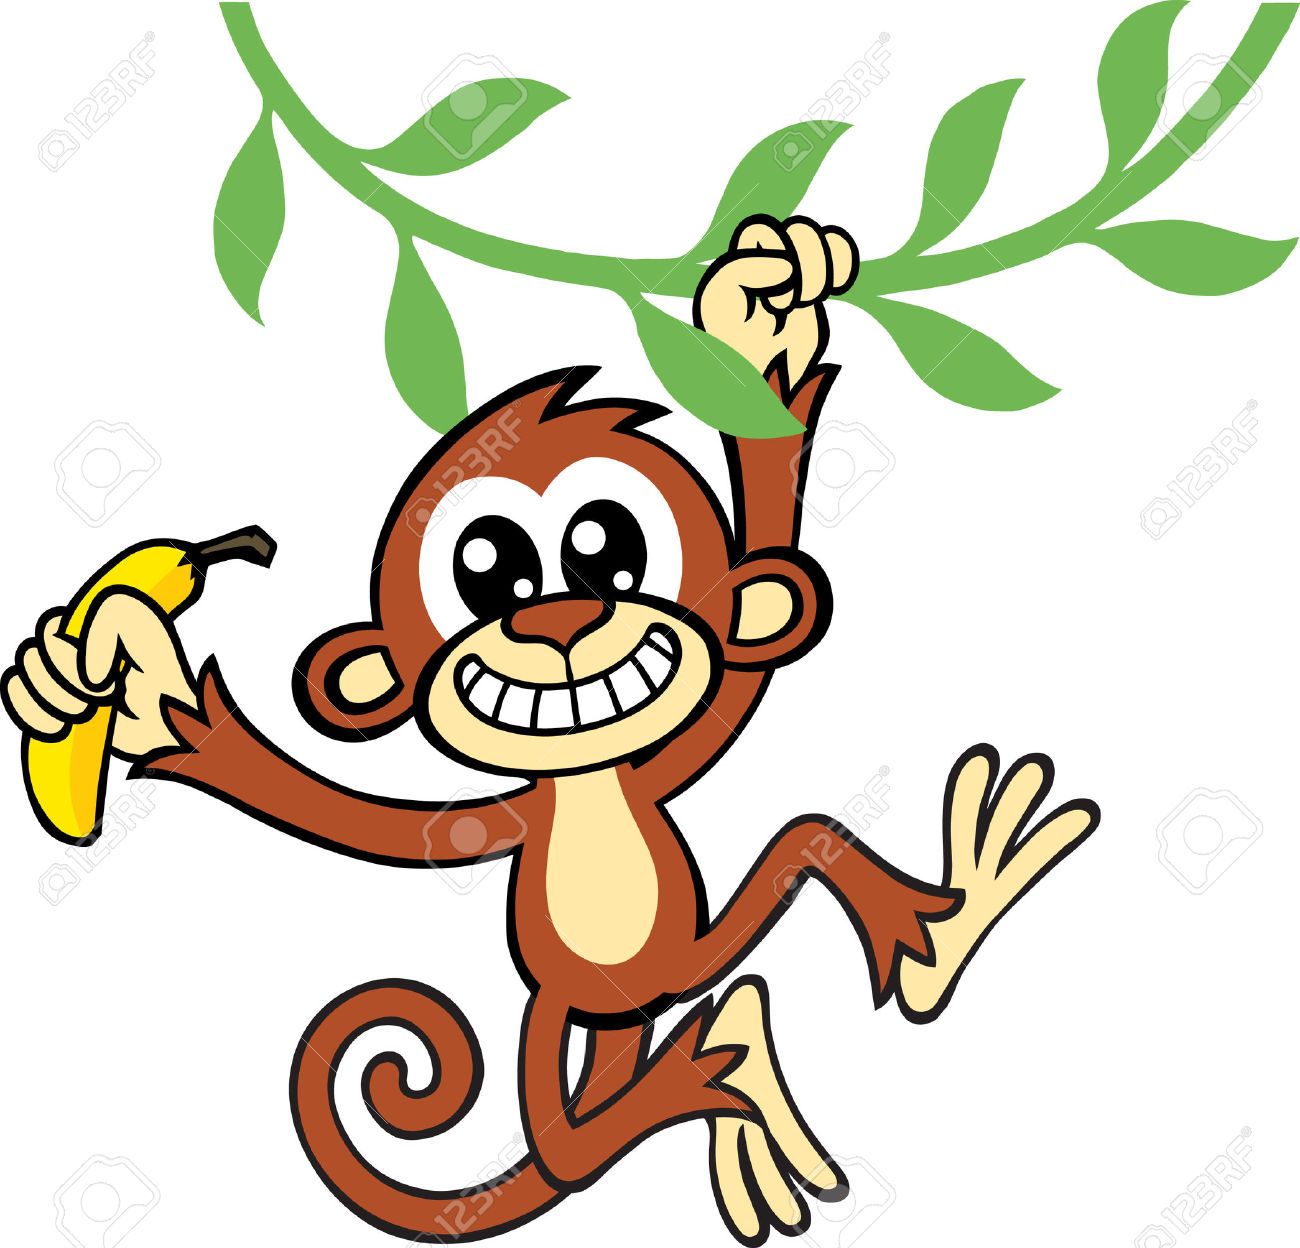 Swinging cartoon monkey from a tree 